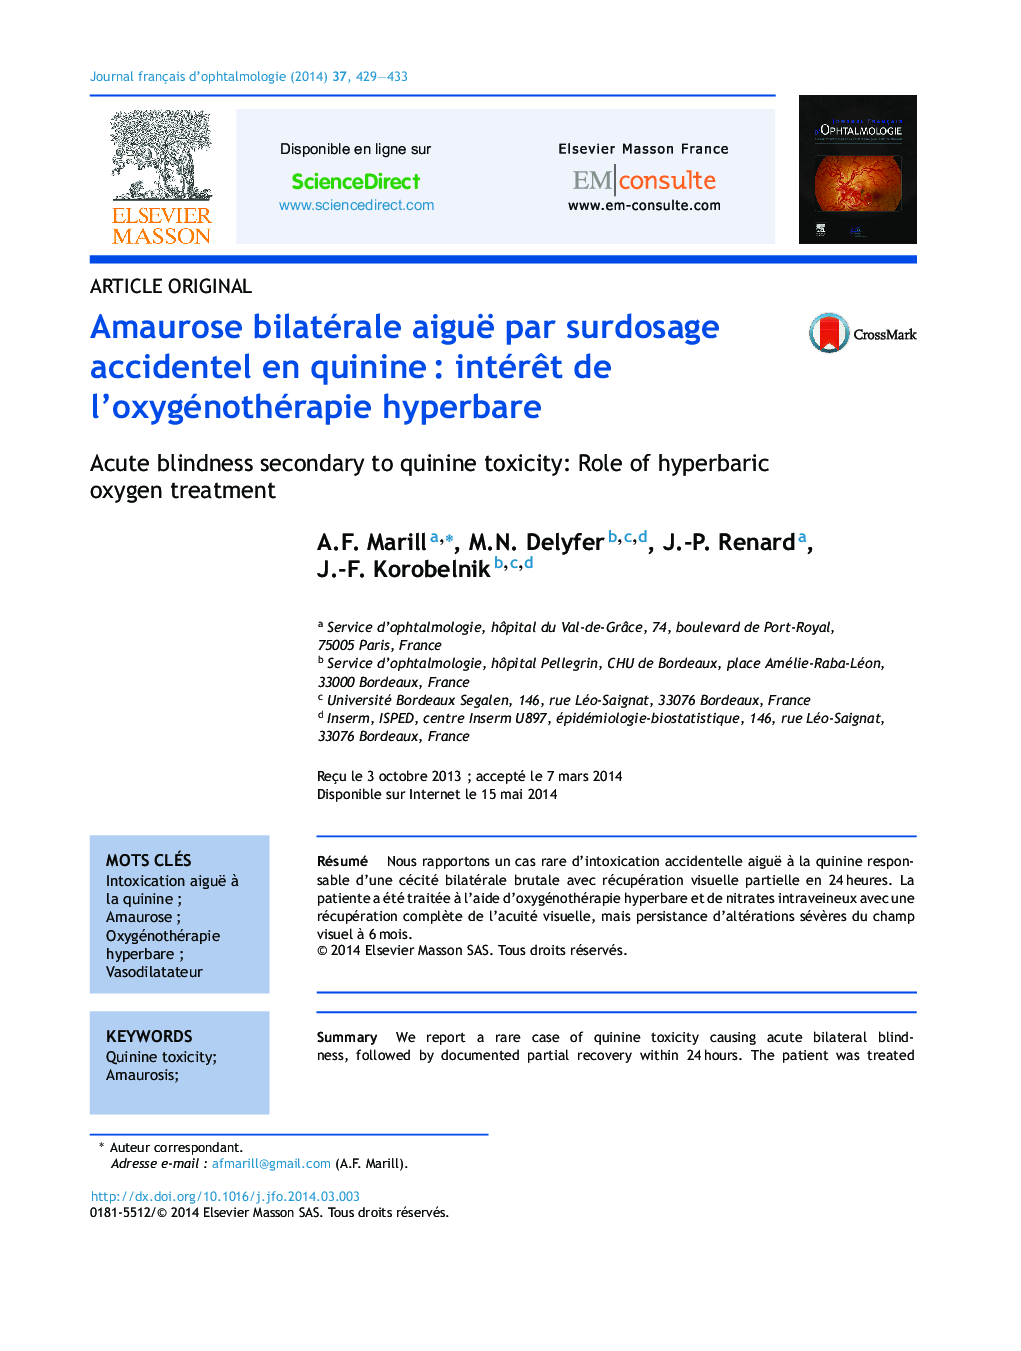 Amaurose bilatérale aiguë par surdosage accidentel en quinineÂ : intérÃªt de l'oxygénothérapie hyperbare